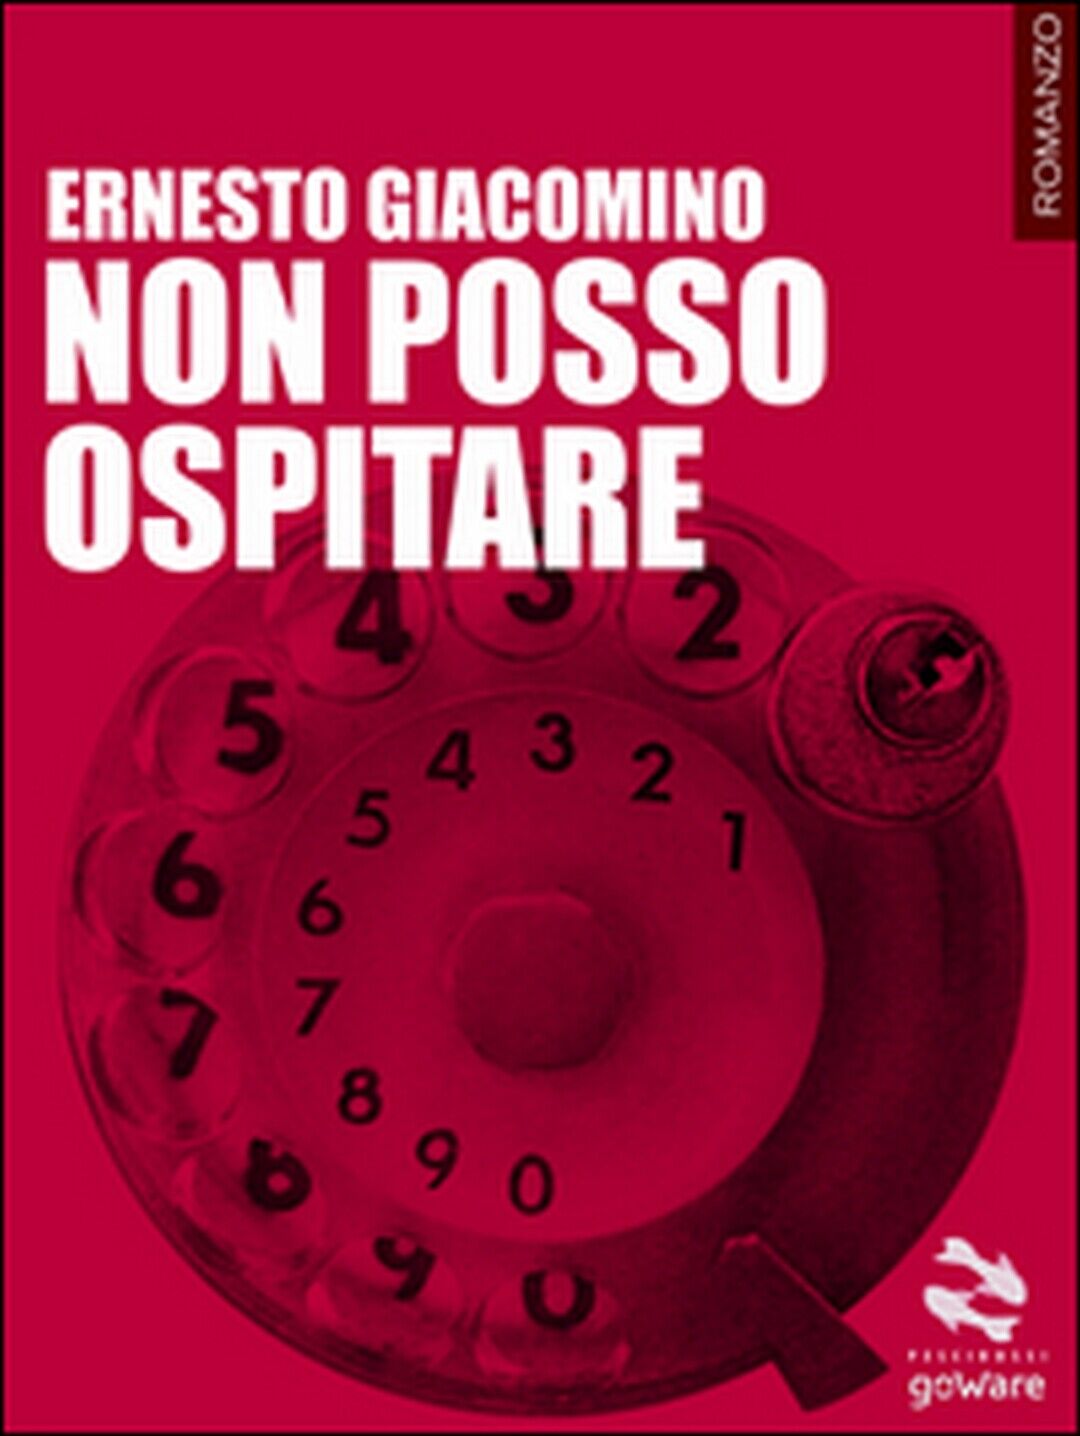 Non posso ospitare  di Ernesto Giacomino,  2014,  Goware libro usato